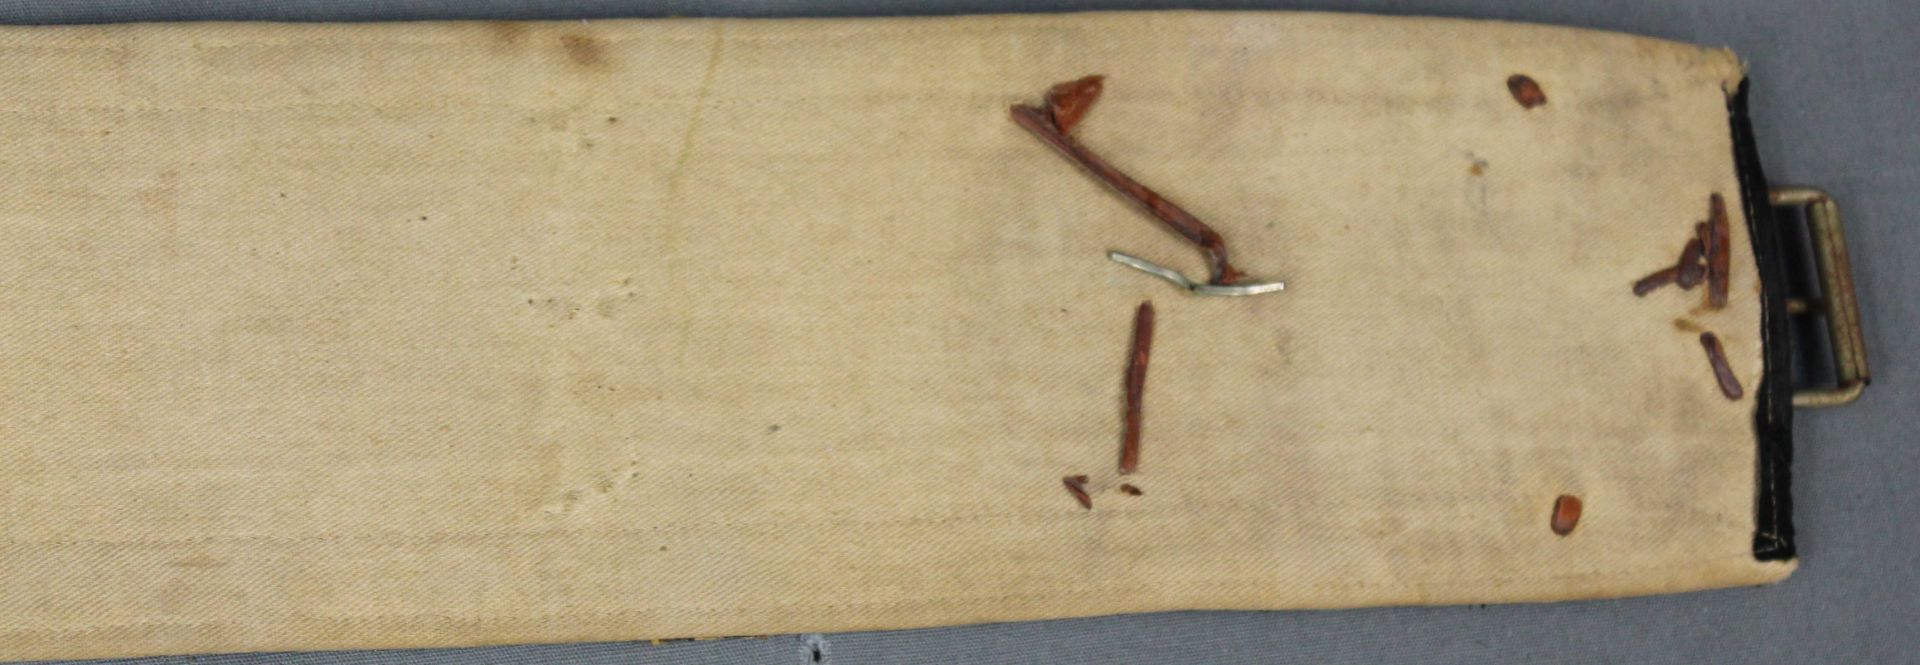 Jambia curved dagger. Arabia. Antique, around 150-250 years old. - Bild 3 aus 14